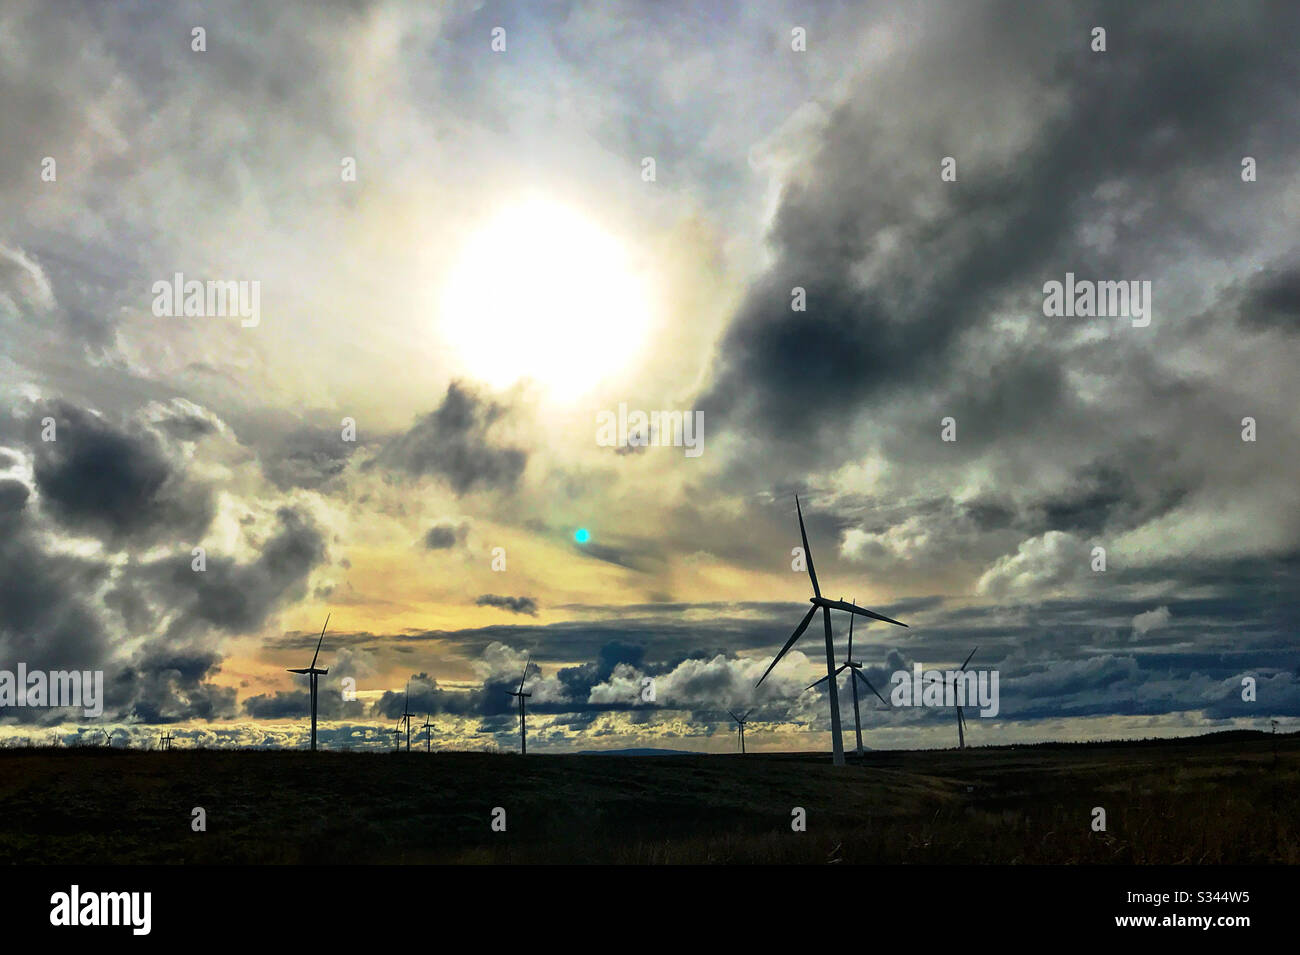 Windmühlen in Whitelee Windfarm in Westschottland. Whitelee ist die größte Onshore-Windfarm Großbritanniens. Stockfoto